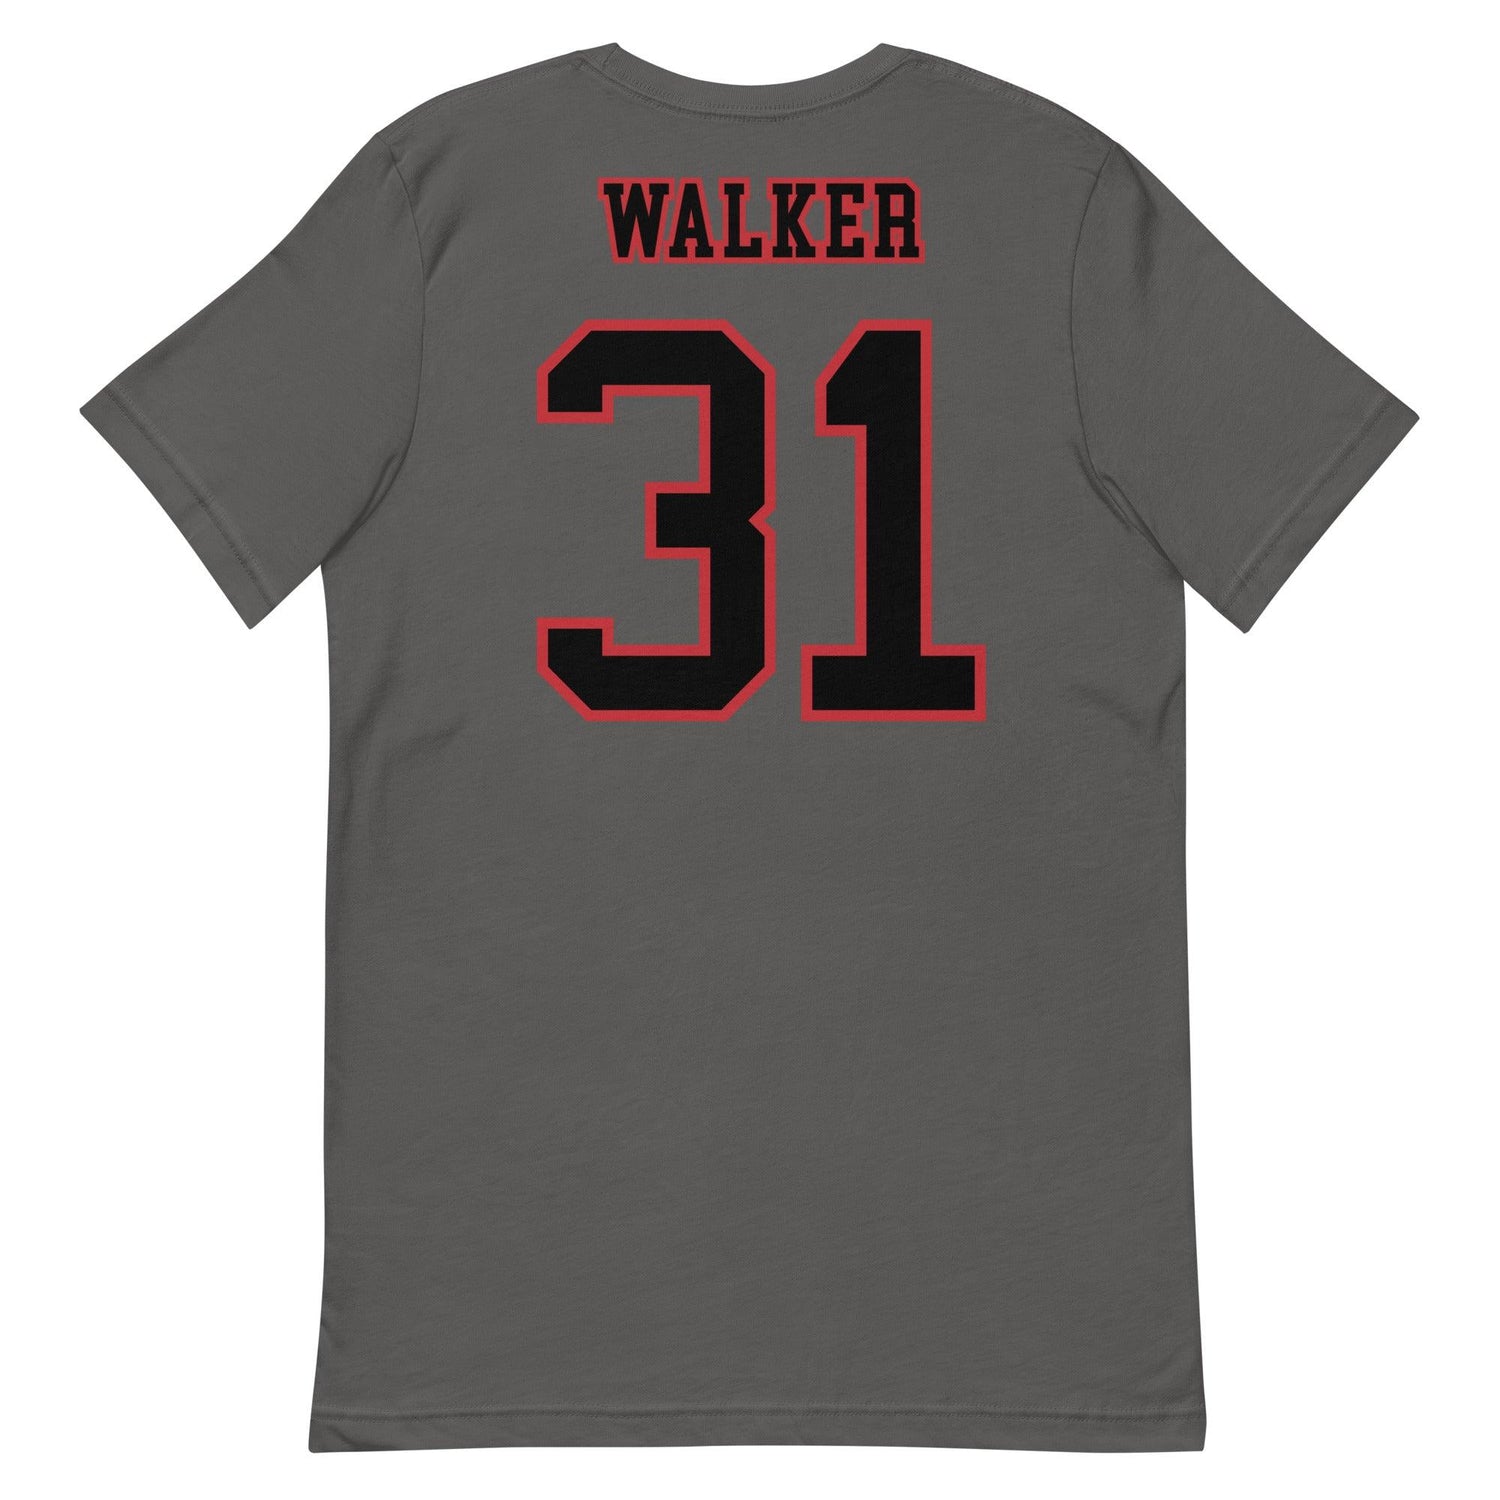 Johned Walker "Jersey" t-shirt - Fan Arch